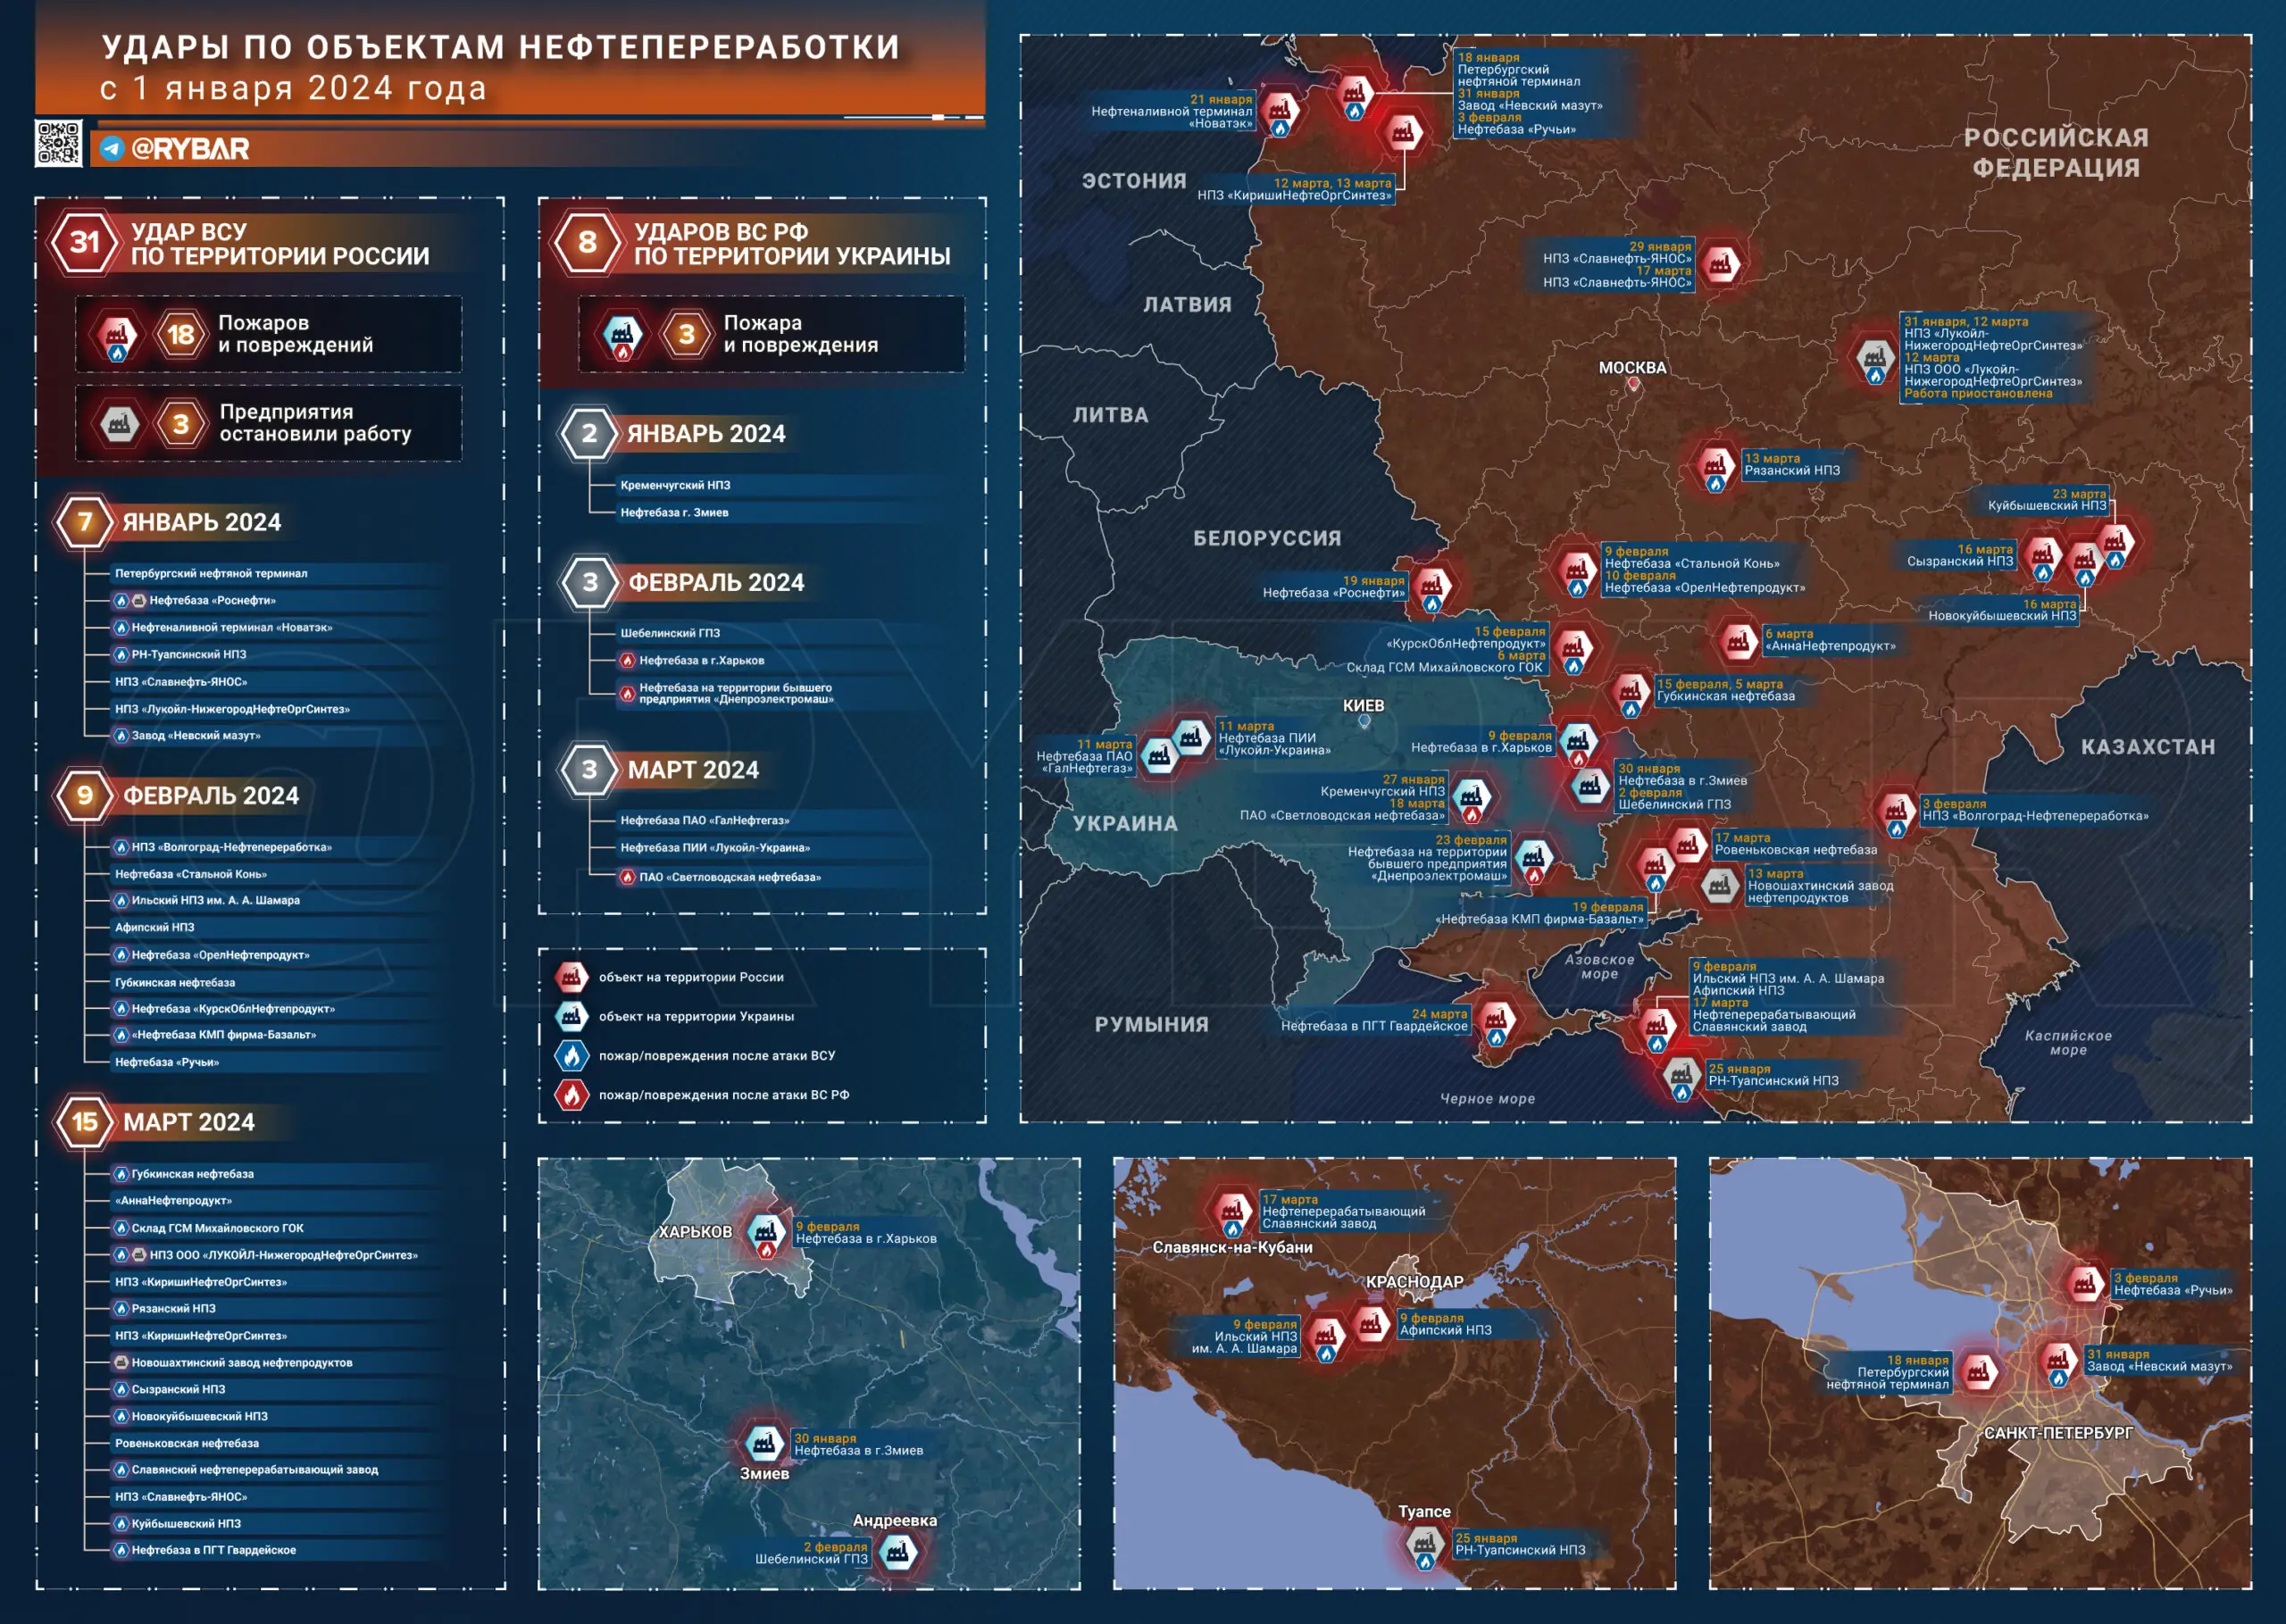 Επιθέσεις σε ρωσικά διυλιστήρια: πιθανές συνέπειες και επιλογές αντιμετώπισης